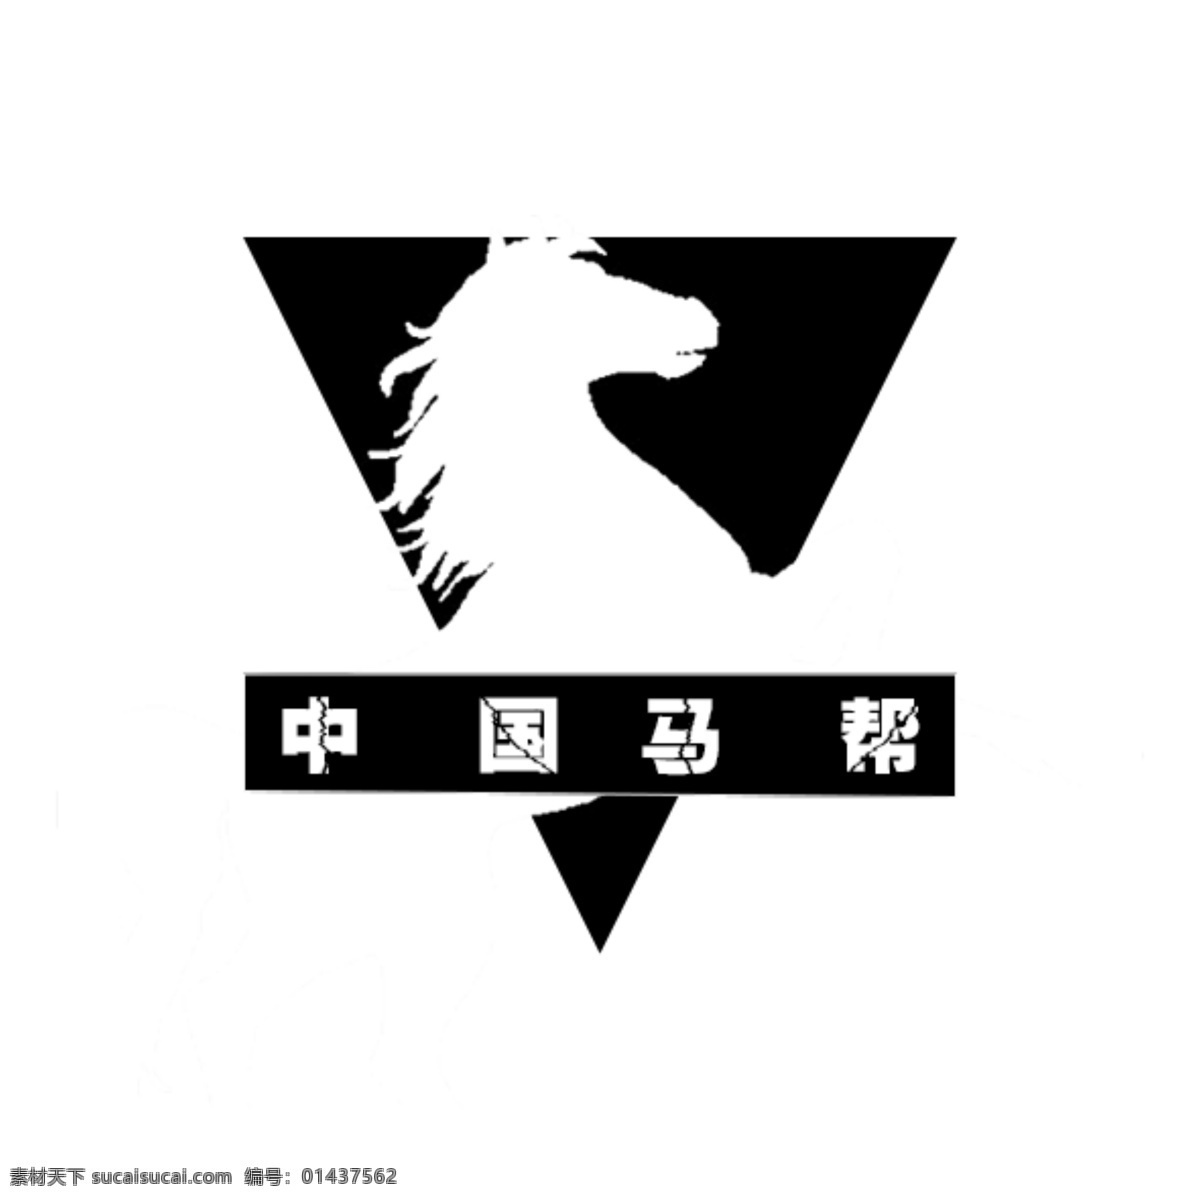 中国马帮 logo 原创 时尚 简约 白色